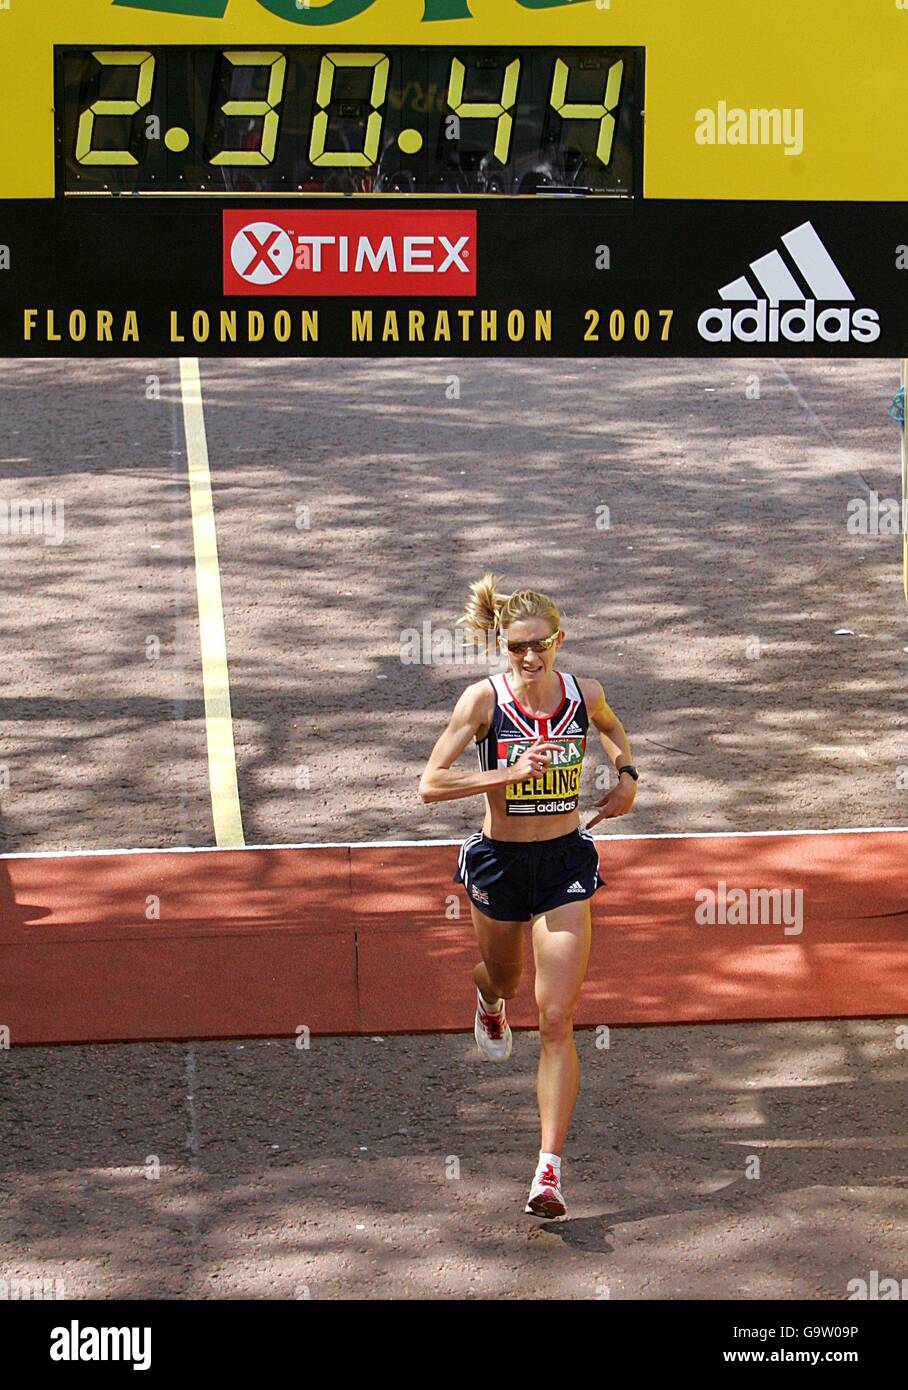 Birtain's Liz Yelling läuft eine persönliche Bestzeit, um in den Top 10 des Elite-Damenrennens beim Flora London Marathon in London zu beenden. Stockfoto